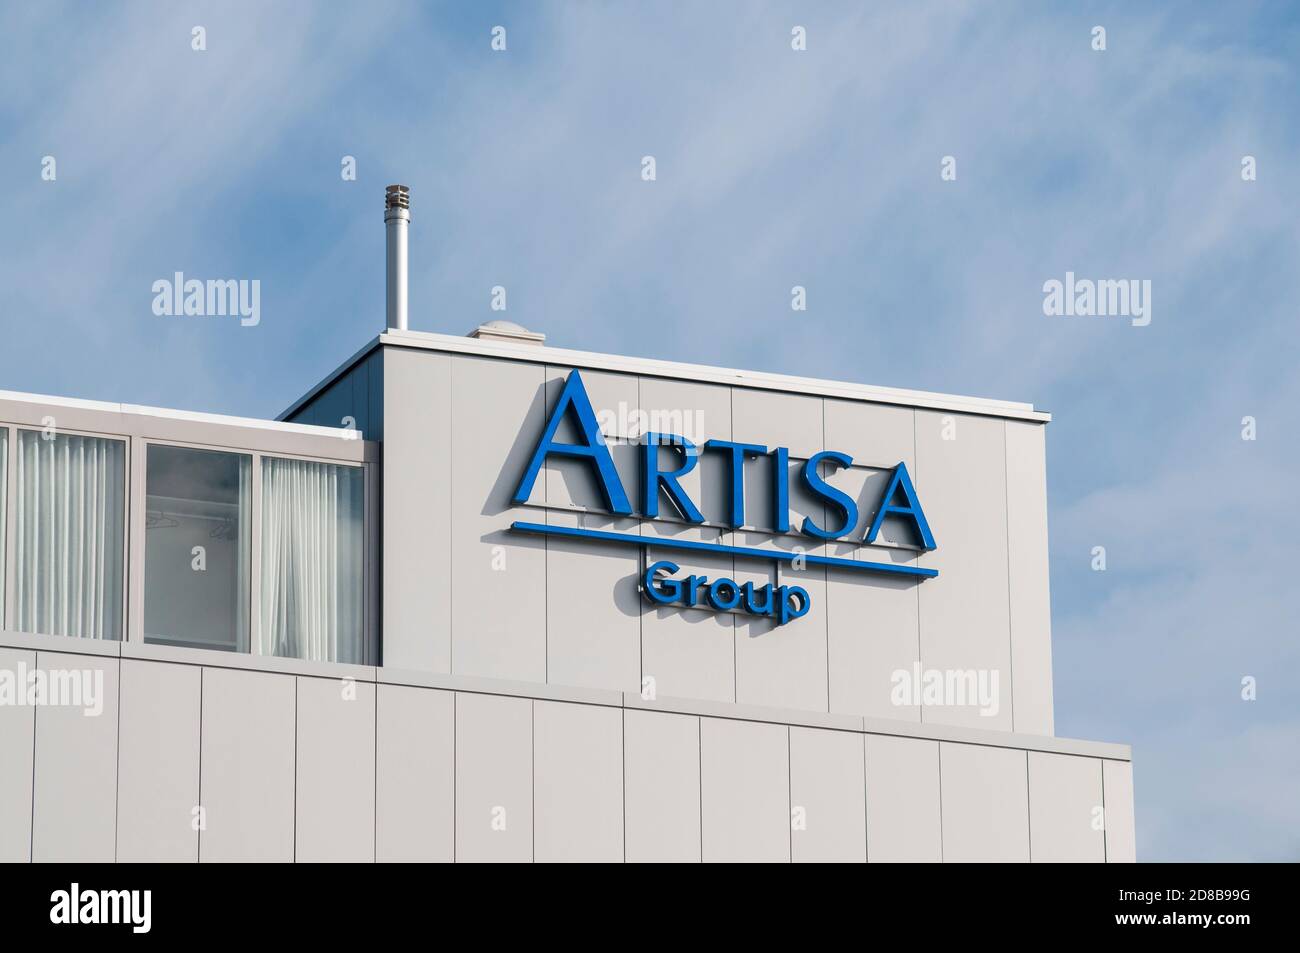 Manno, Tessin, Suisse - 24 octobre 2020 : logo du groupe Artisa sur le bâtiment de bureaux de Manno. Artisa est spécialisée dans les biens immobiliers inves Banque D'Images